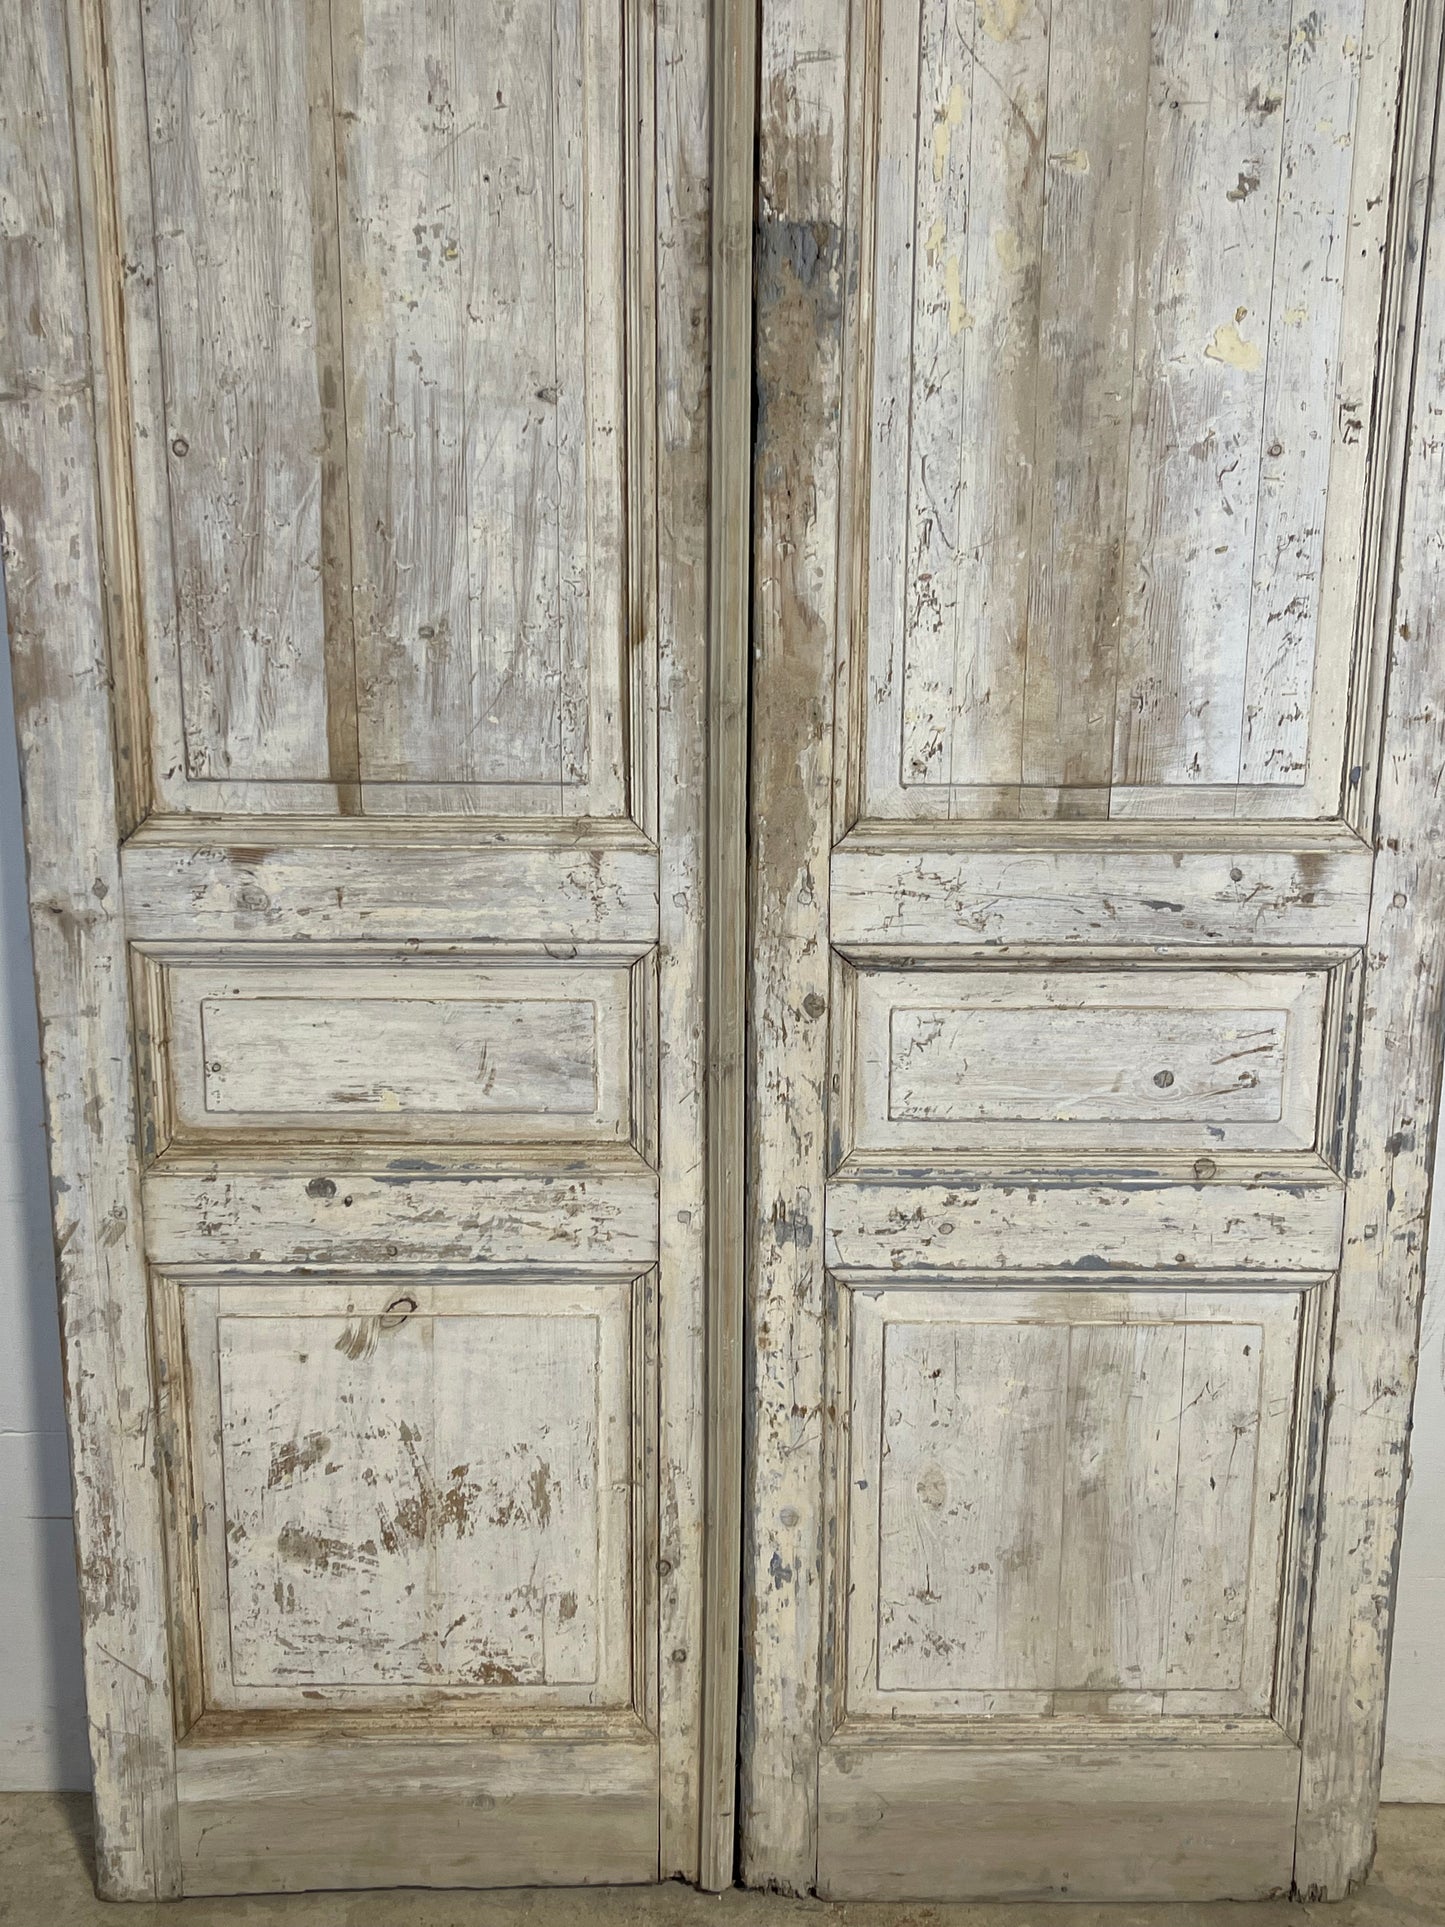 Antique French panel Doors (94.25x49.25) K370